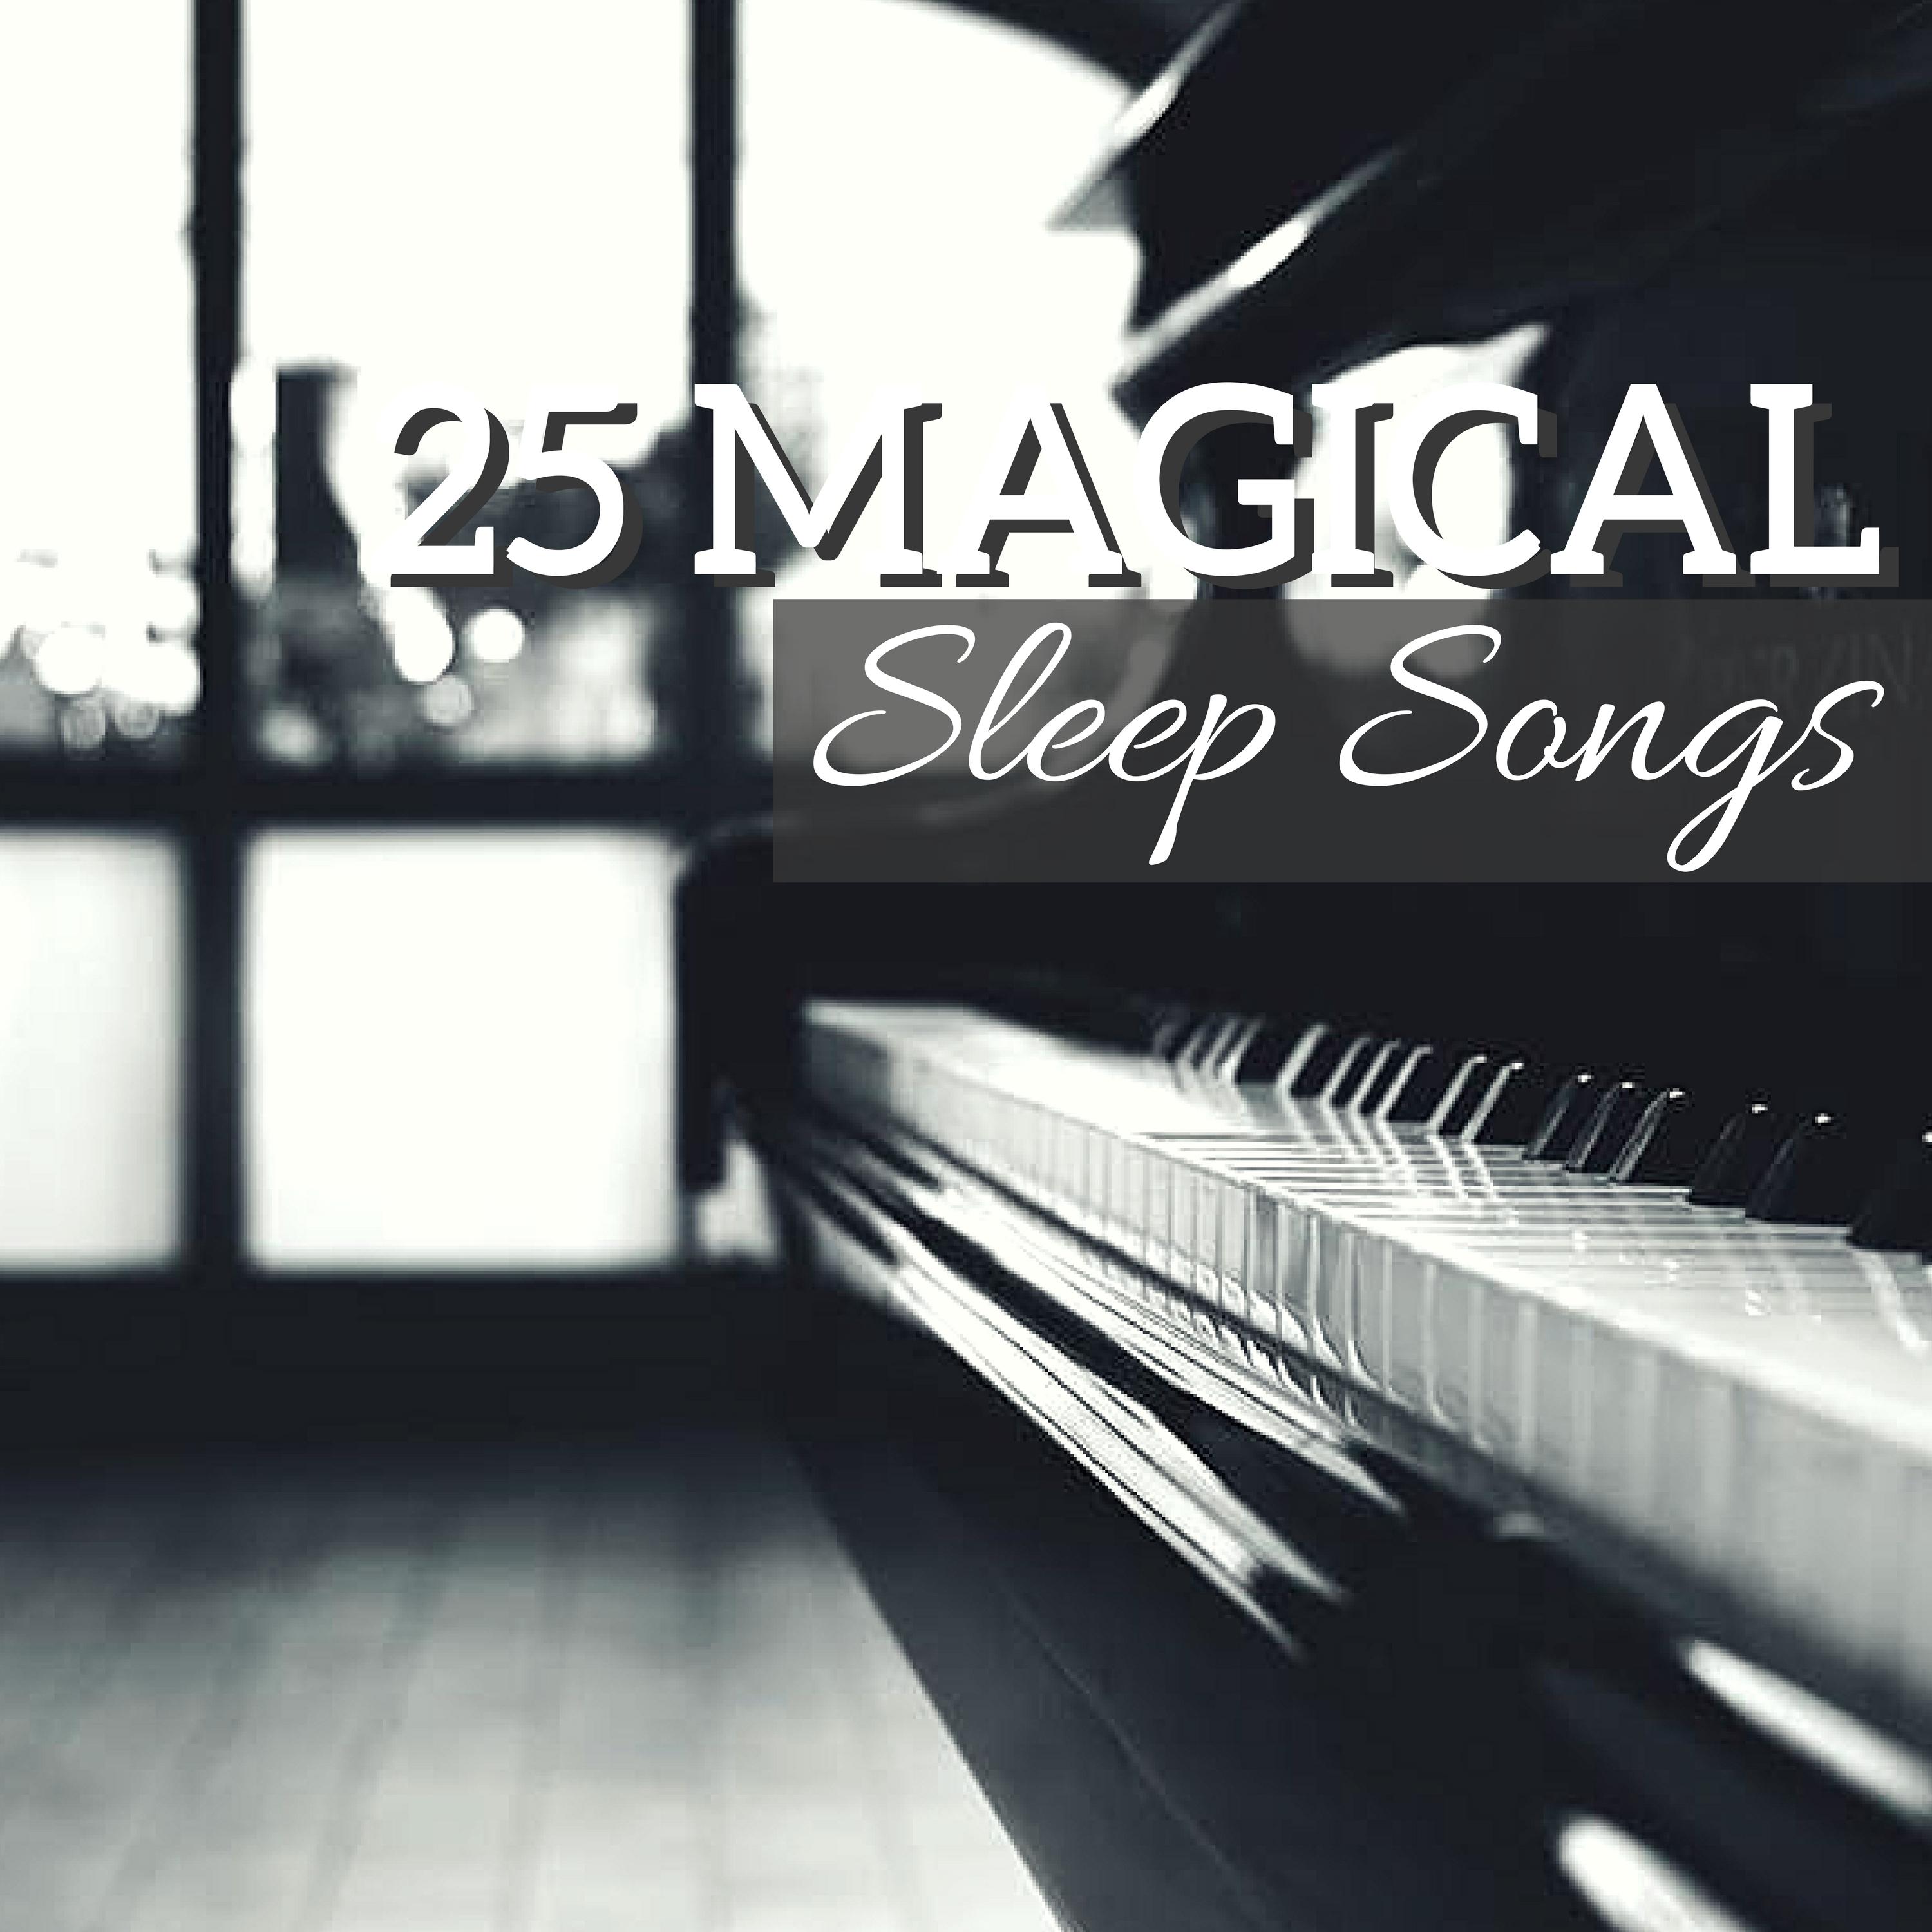 Magical Sleep